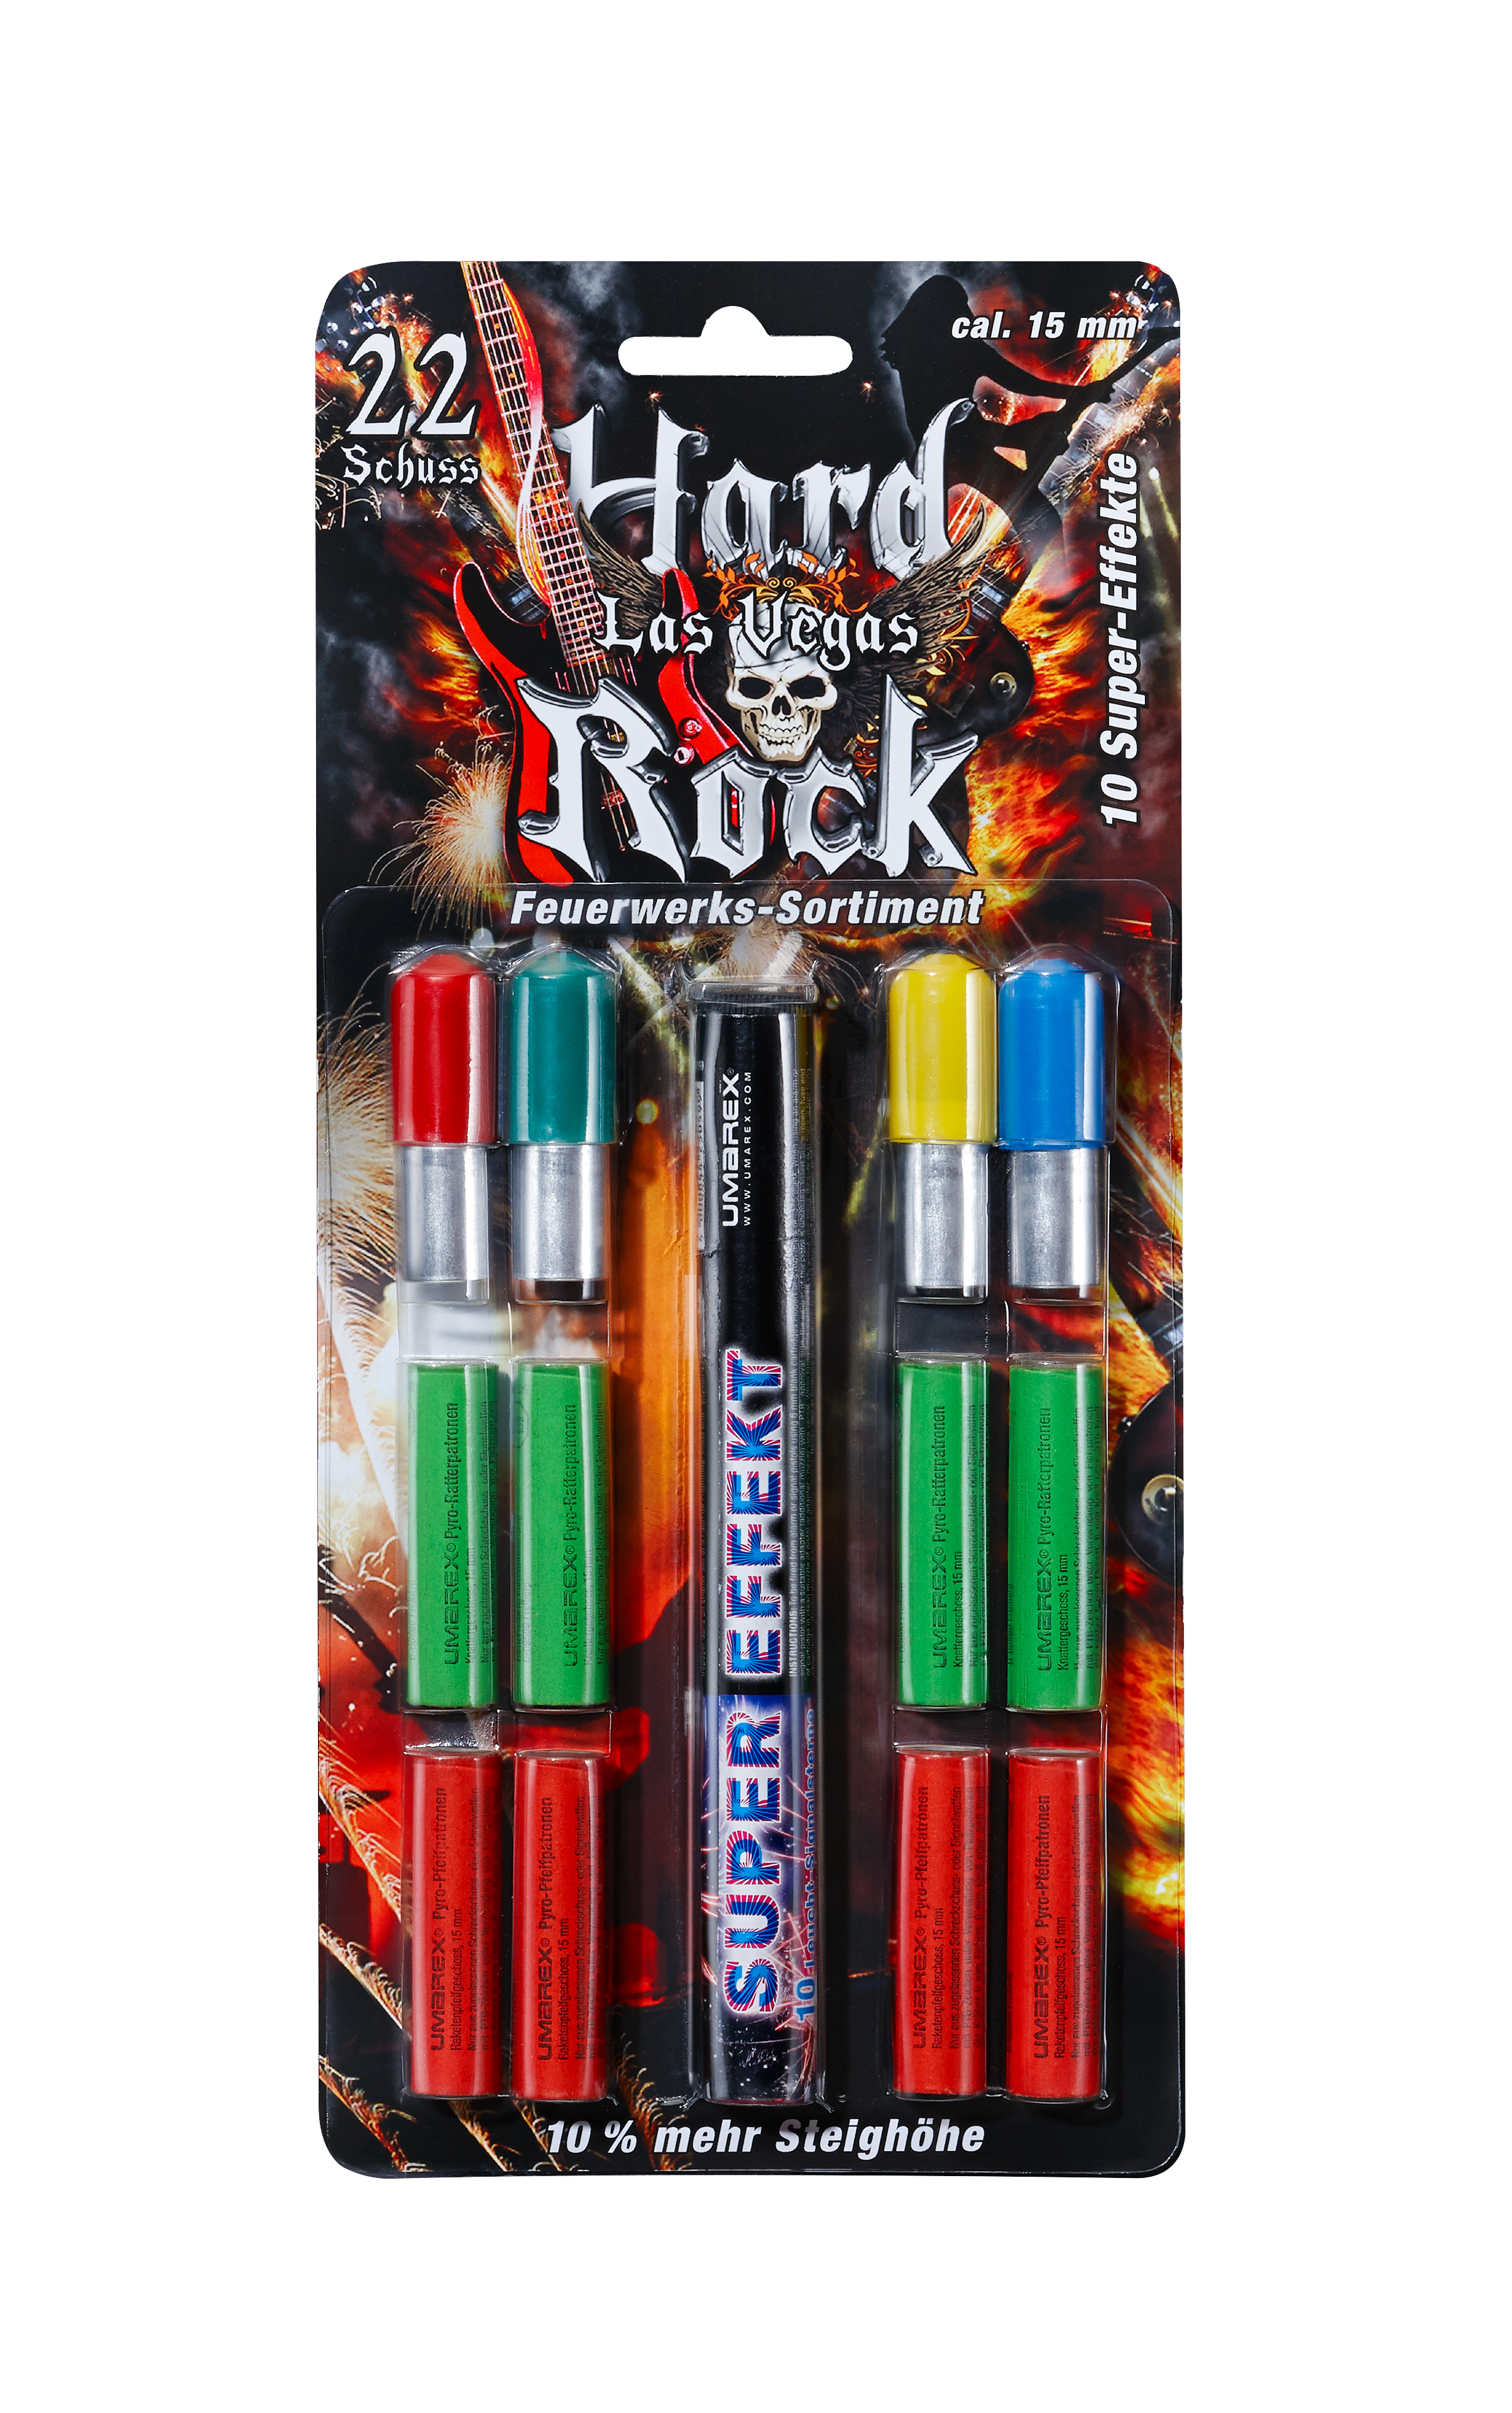 Feuerwerk Umarex Hard Rock Las Vegas, 22teilig cal. 15mm Pyrotechnik